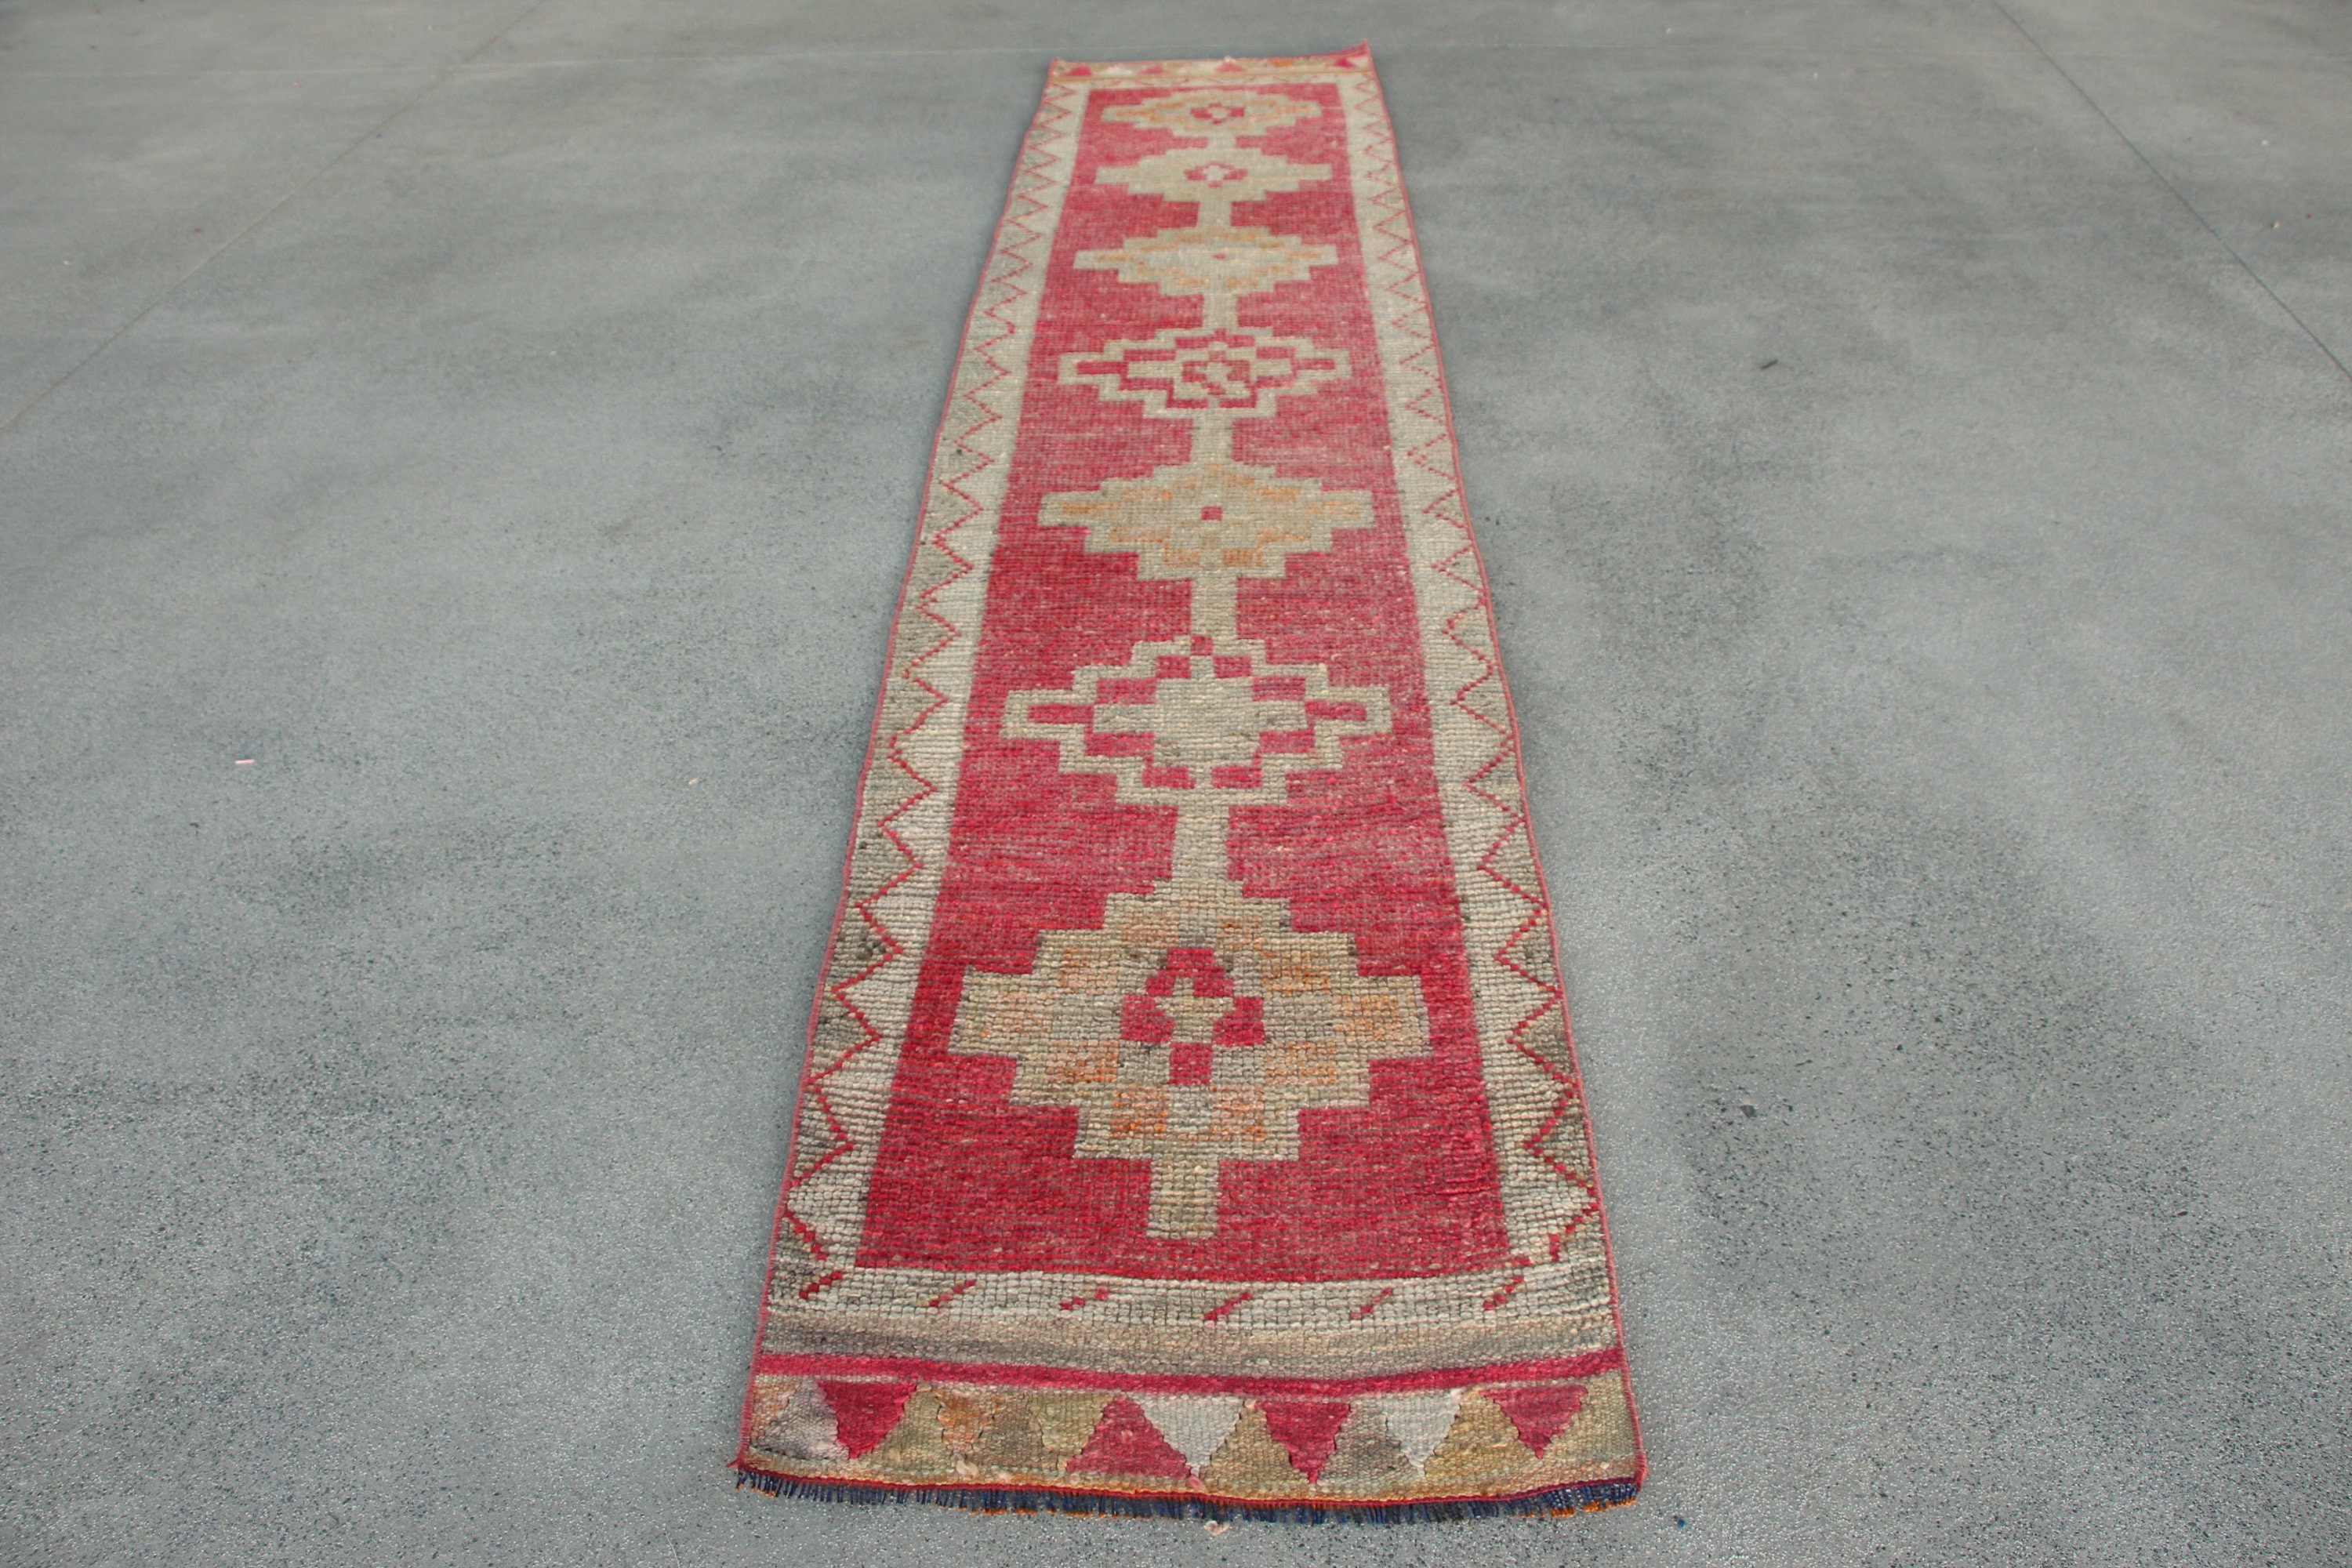 Nomadic Rug, Anatolian Rugs, Vintage Rug, Corridor Rugs, Hallway Rugs, Turkish Rug, Red Oriental Rug, 2.3x11.4 ft Runner Rug